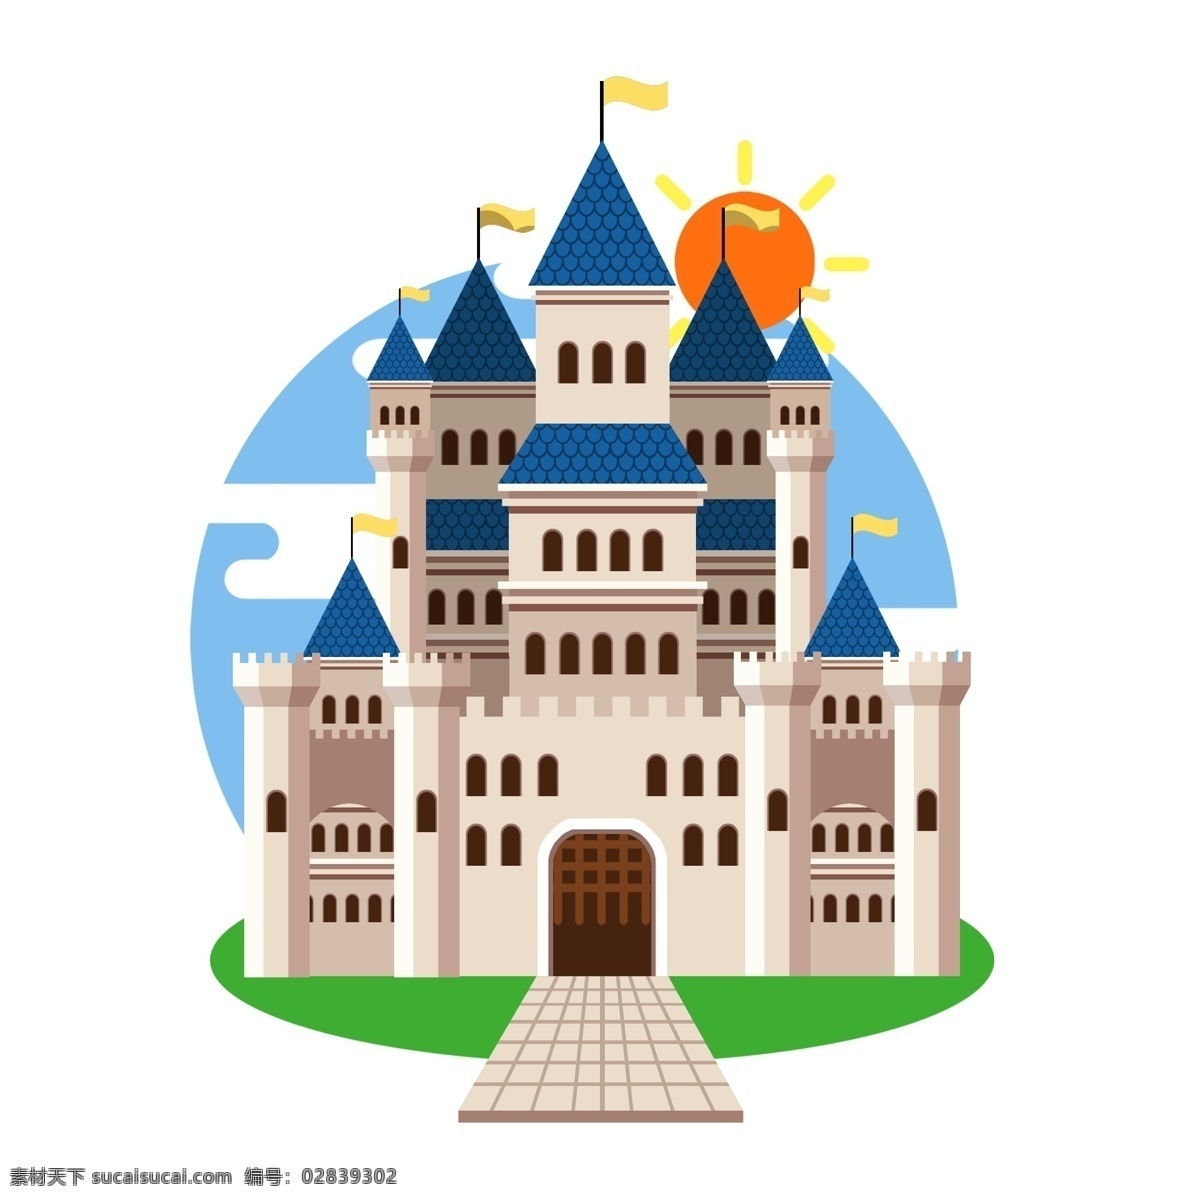 卡通城堡 手绘 欧式 建筑 彩色城堡 皇宫 欧式建筑 儿童城堡 卡通舞台背景 卡通皇宫 公主城堡 欧式城堡 城堡剪影 童话城堡